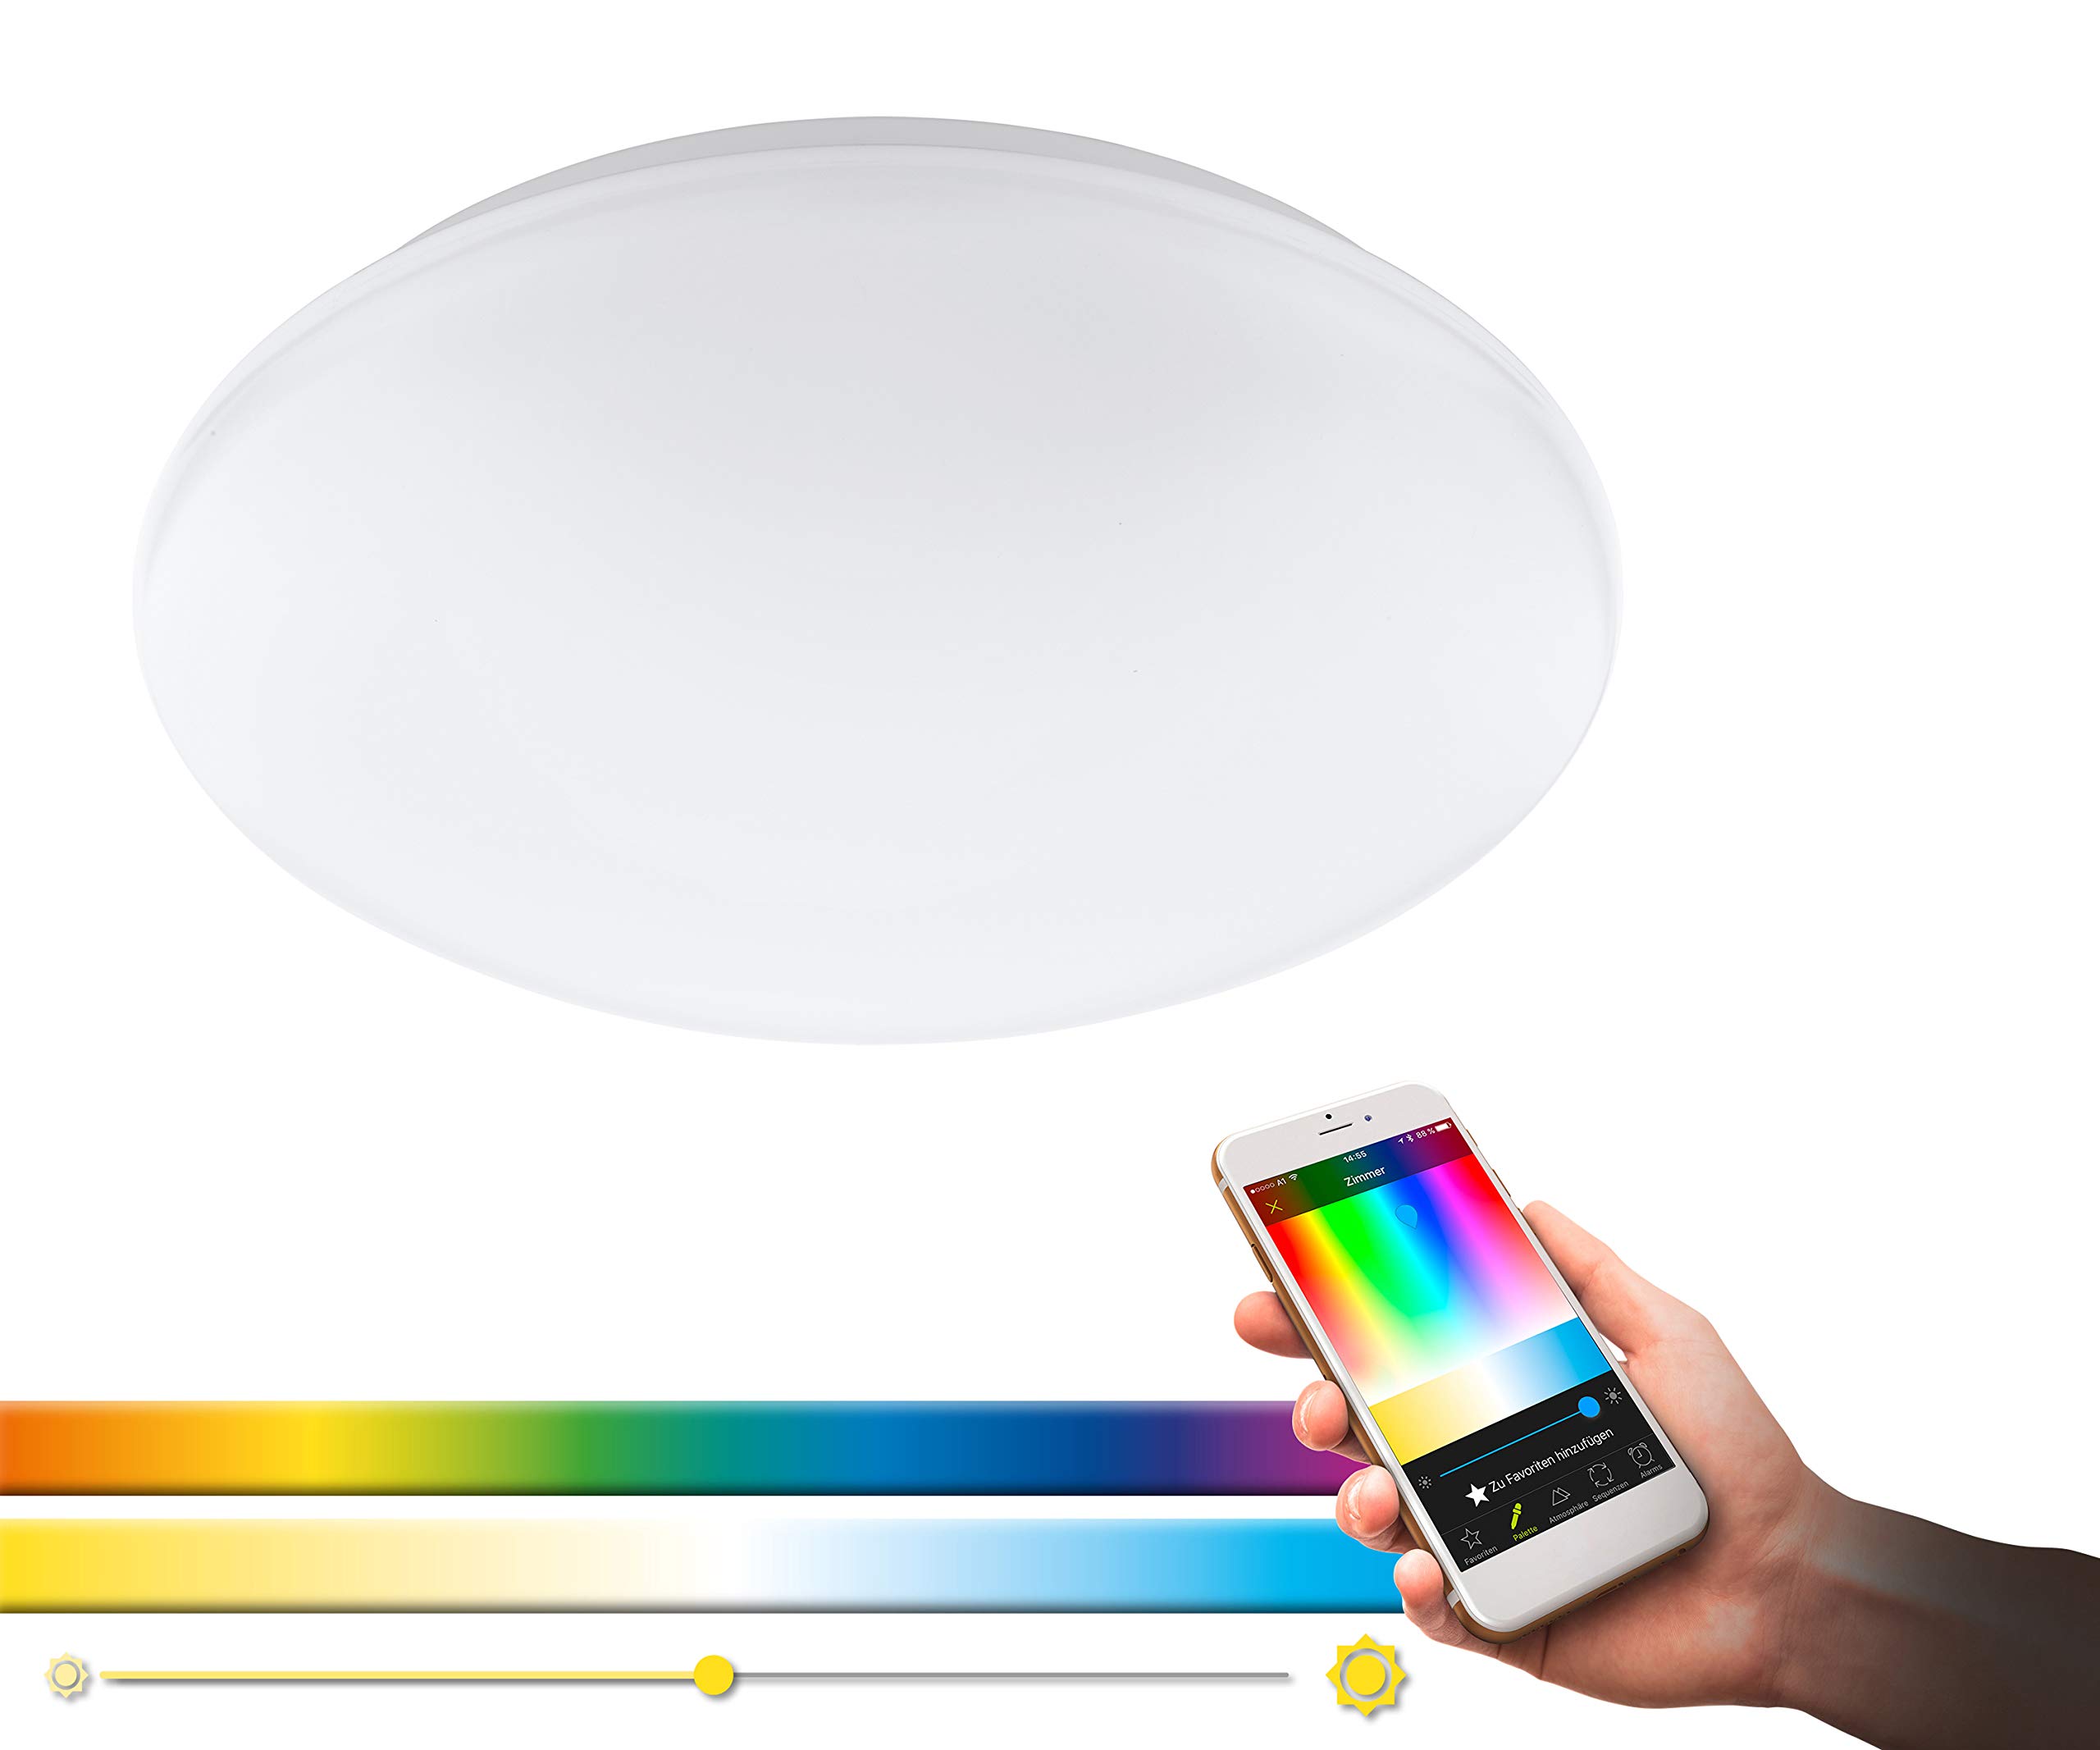 EGLO connect LED Deckenleuchte Giron-C, Smart Home Deckenlampe, Wandlampe aus Stahl, Kunststoff, Farbe: Weiß, Ø: 30 cm, dimmbar, Weißtöne und Farben einstellbar